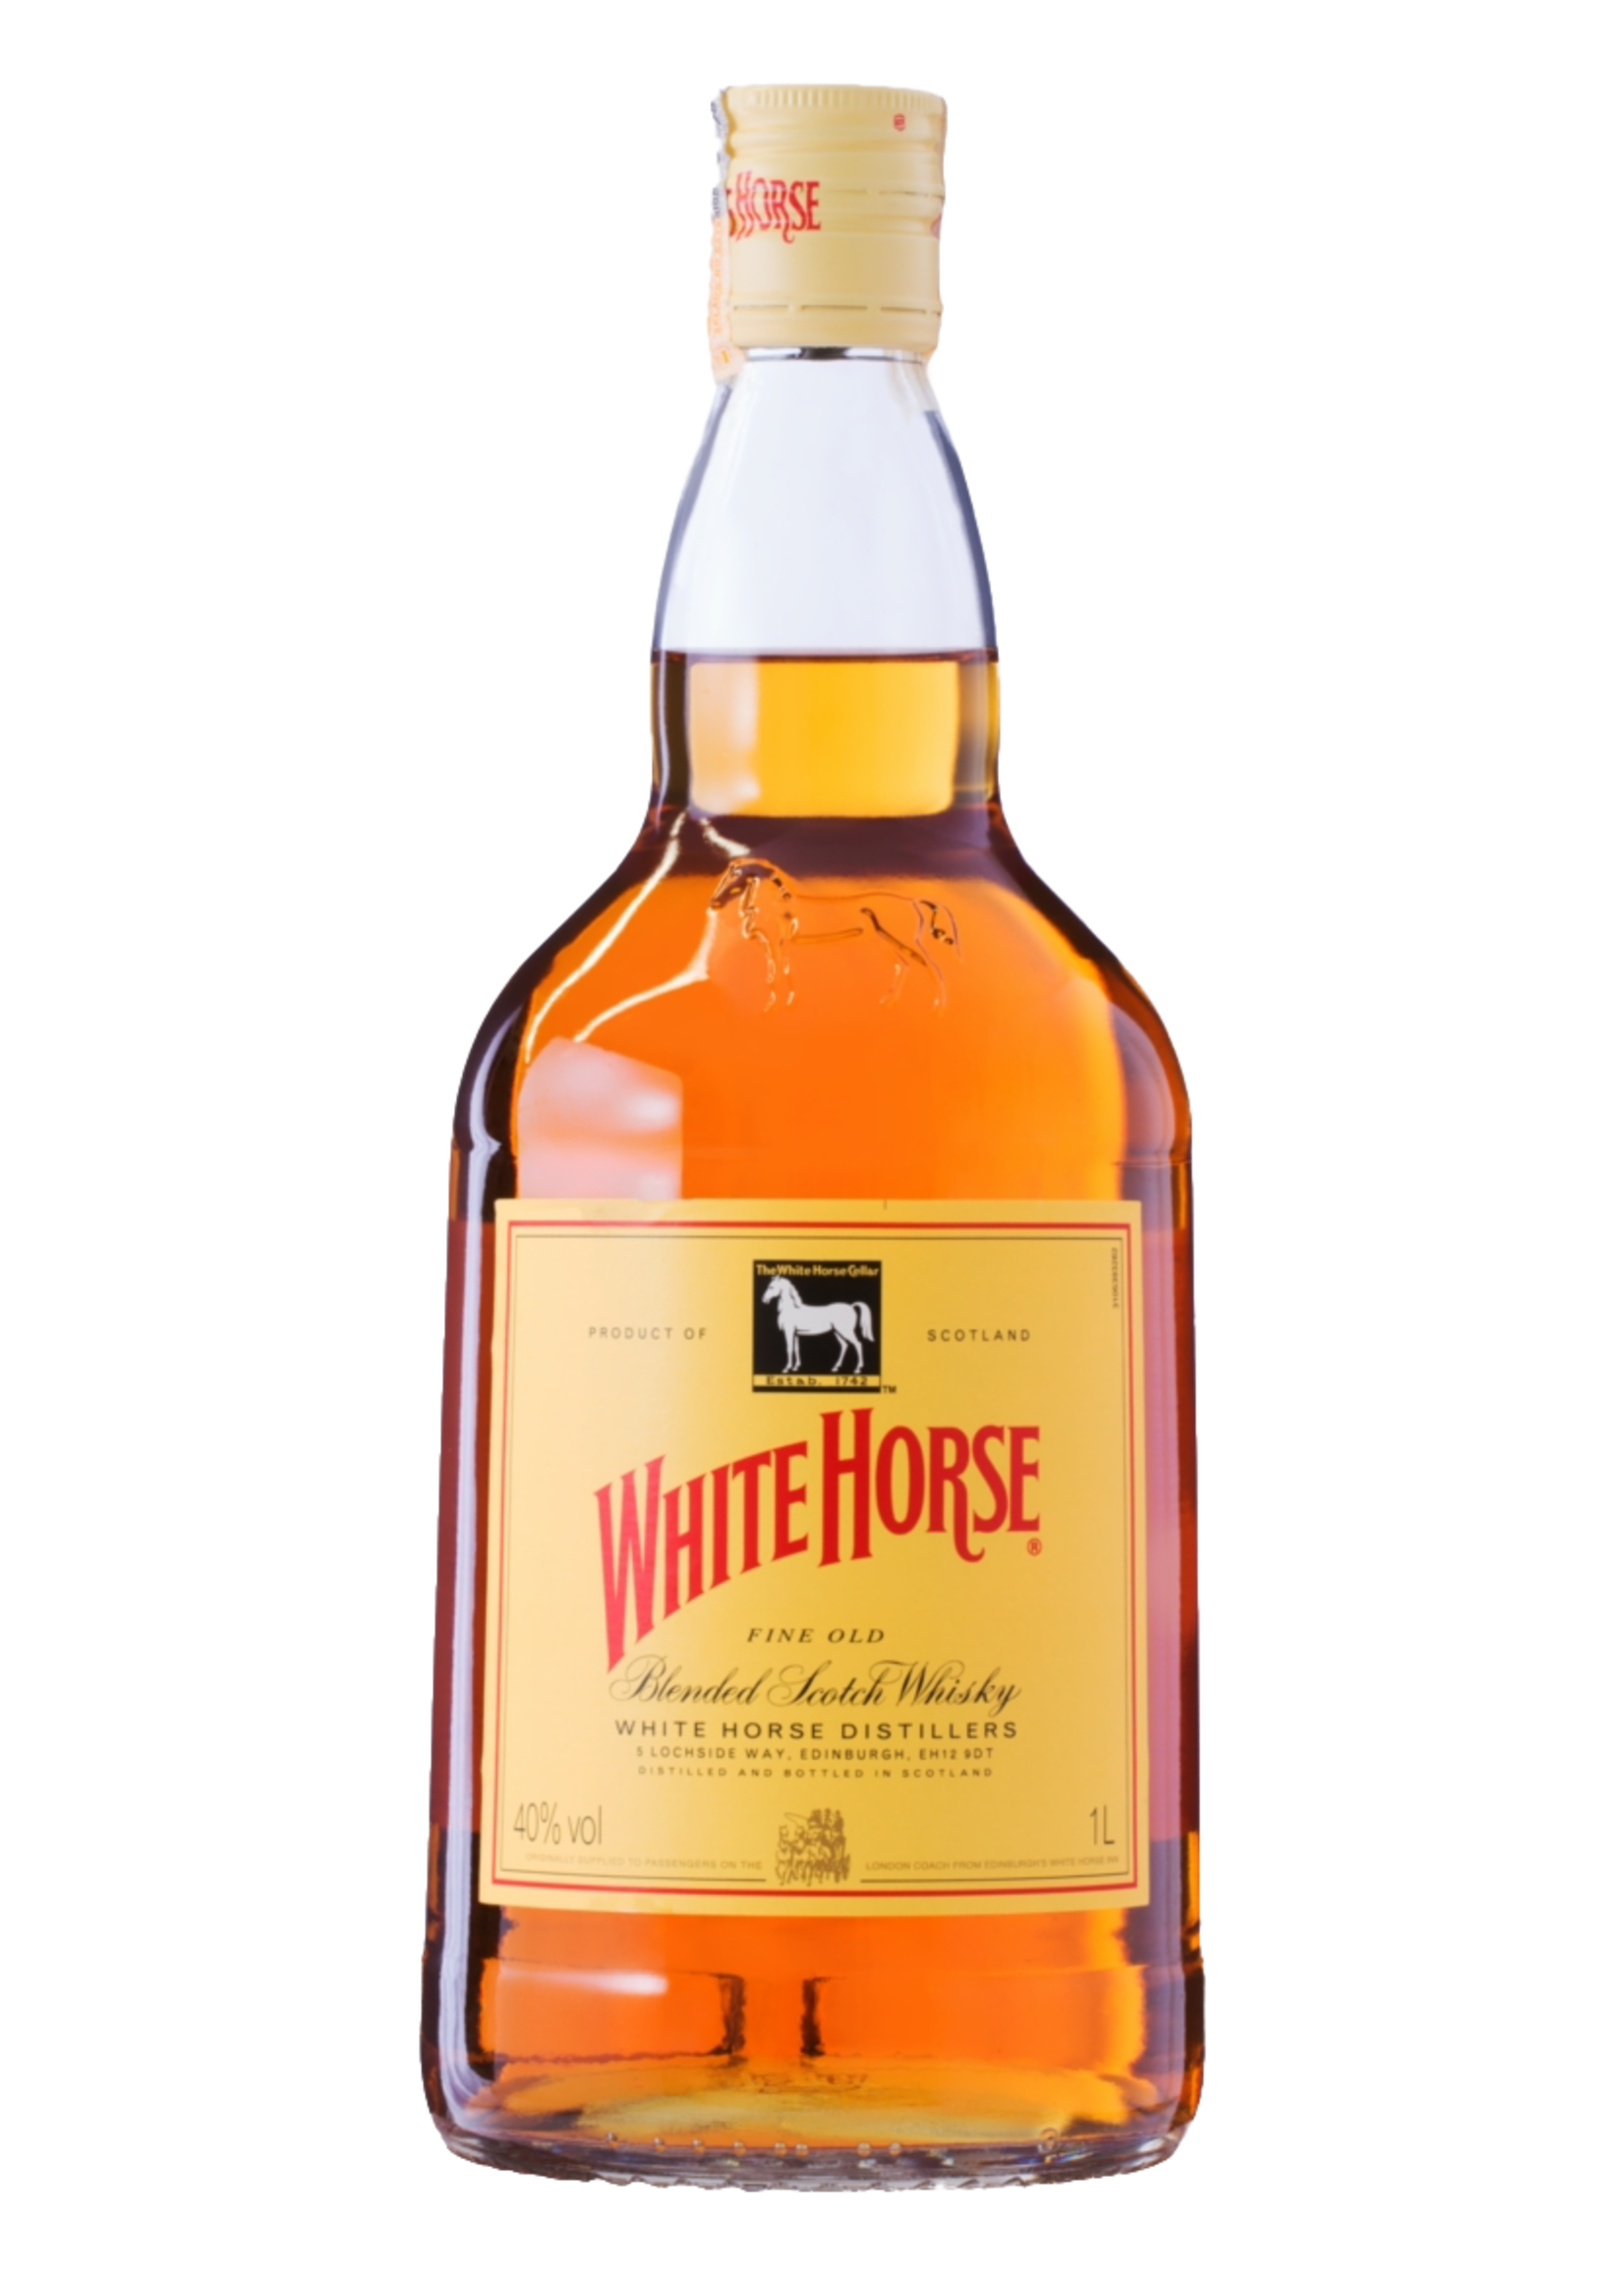 White Horse White Horse / Scotch Whisky